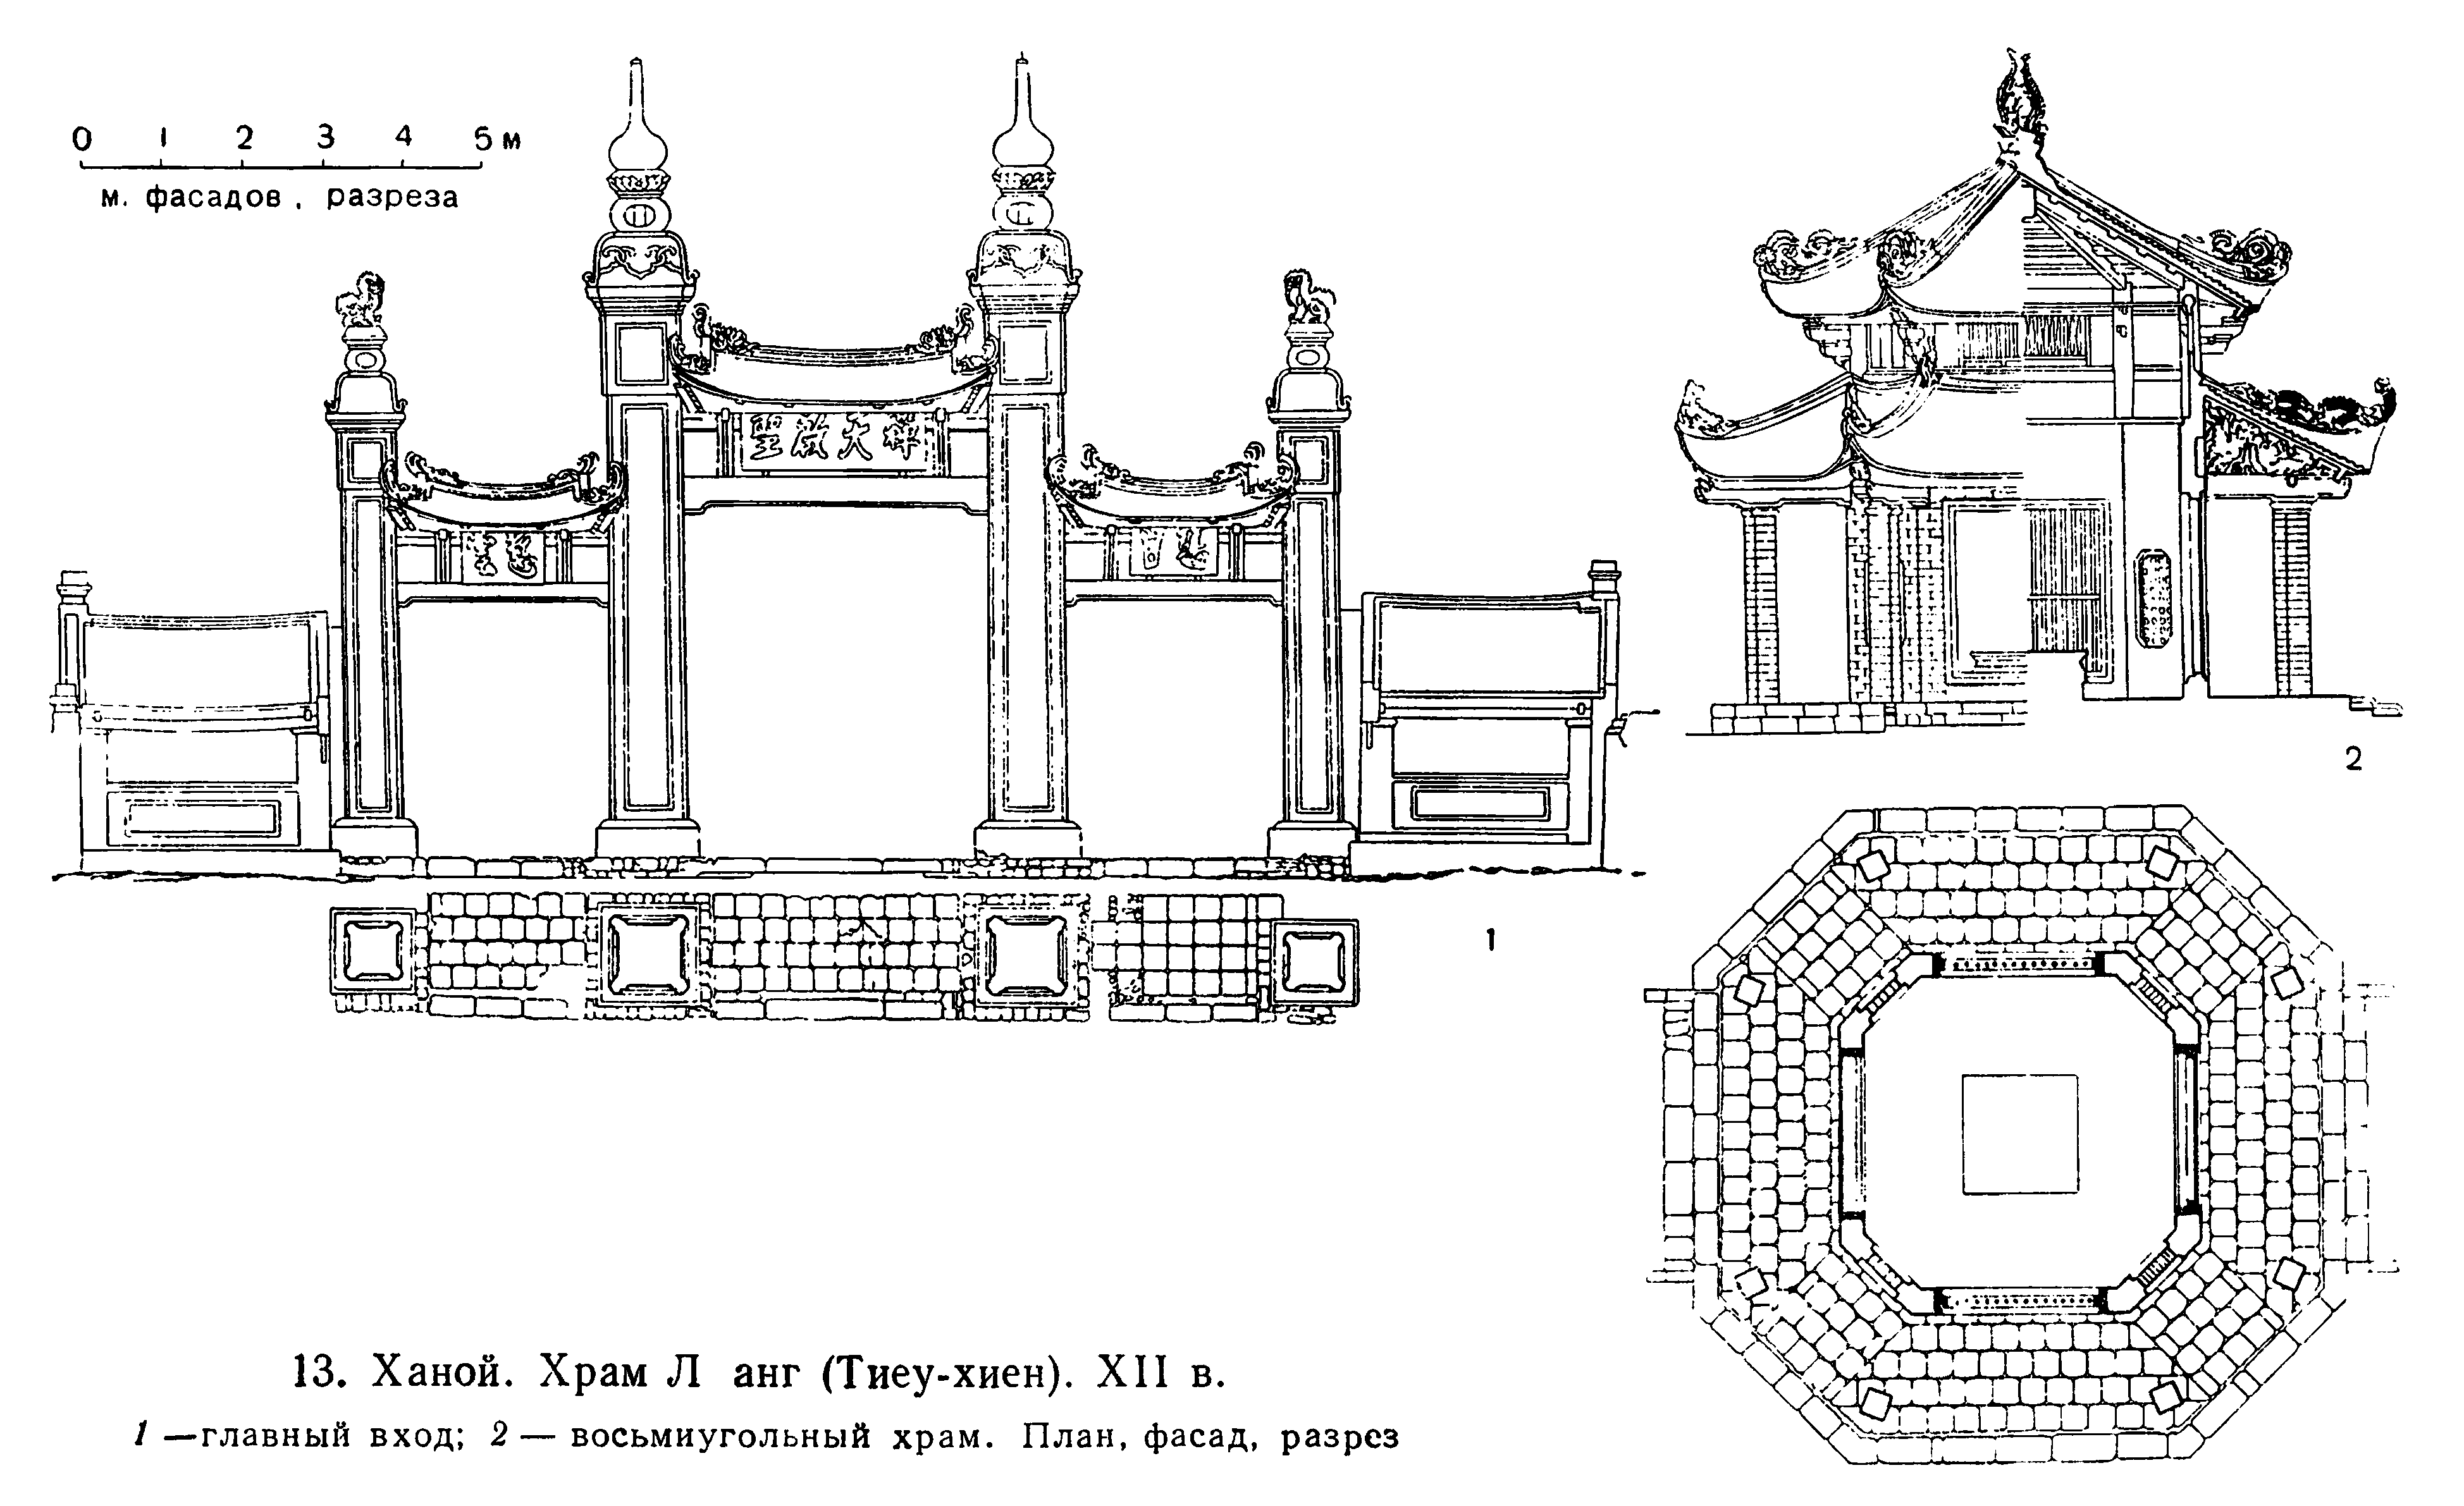 13. Ханой. Храм Ланг (Тиеу-хиен). XII в. 1 — главный вход; 2 — восьмиугольный храм. План, фасад, разрез